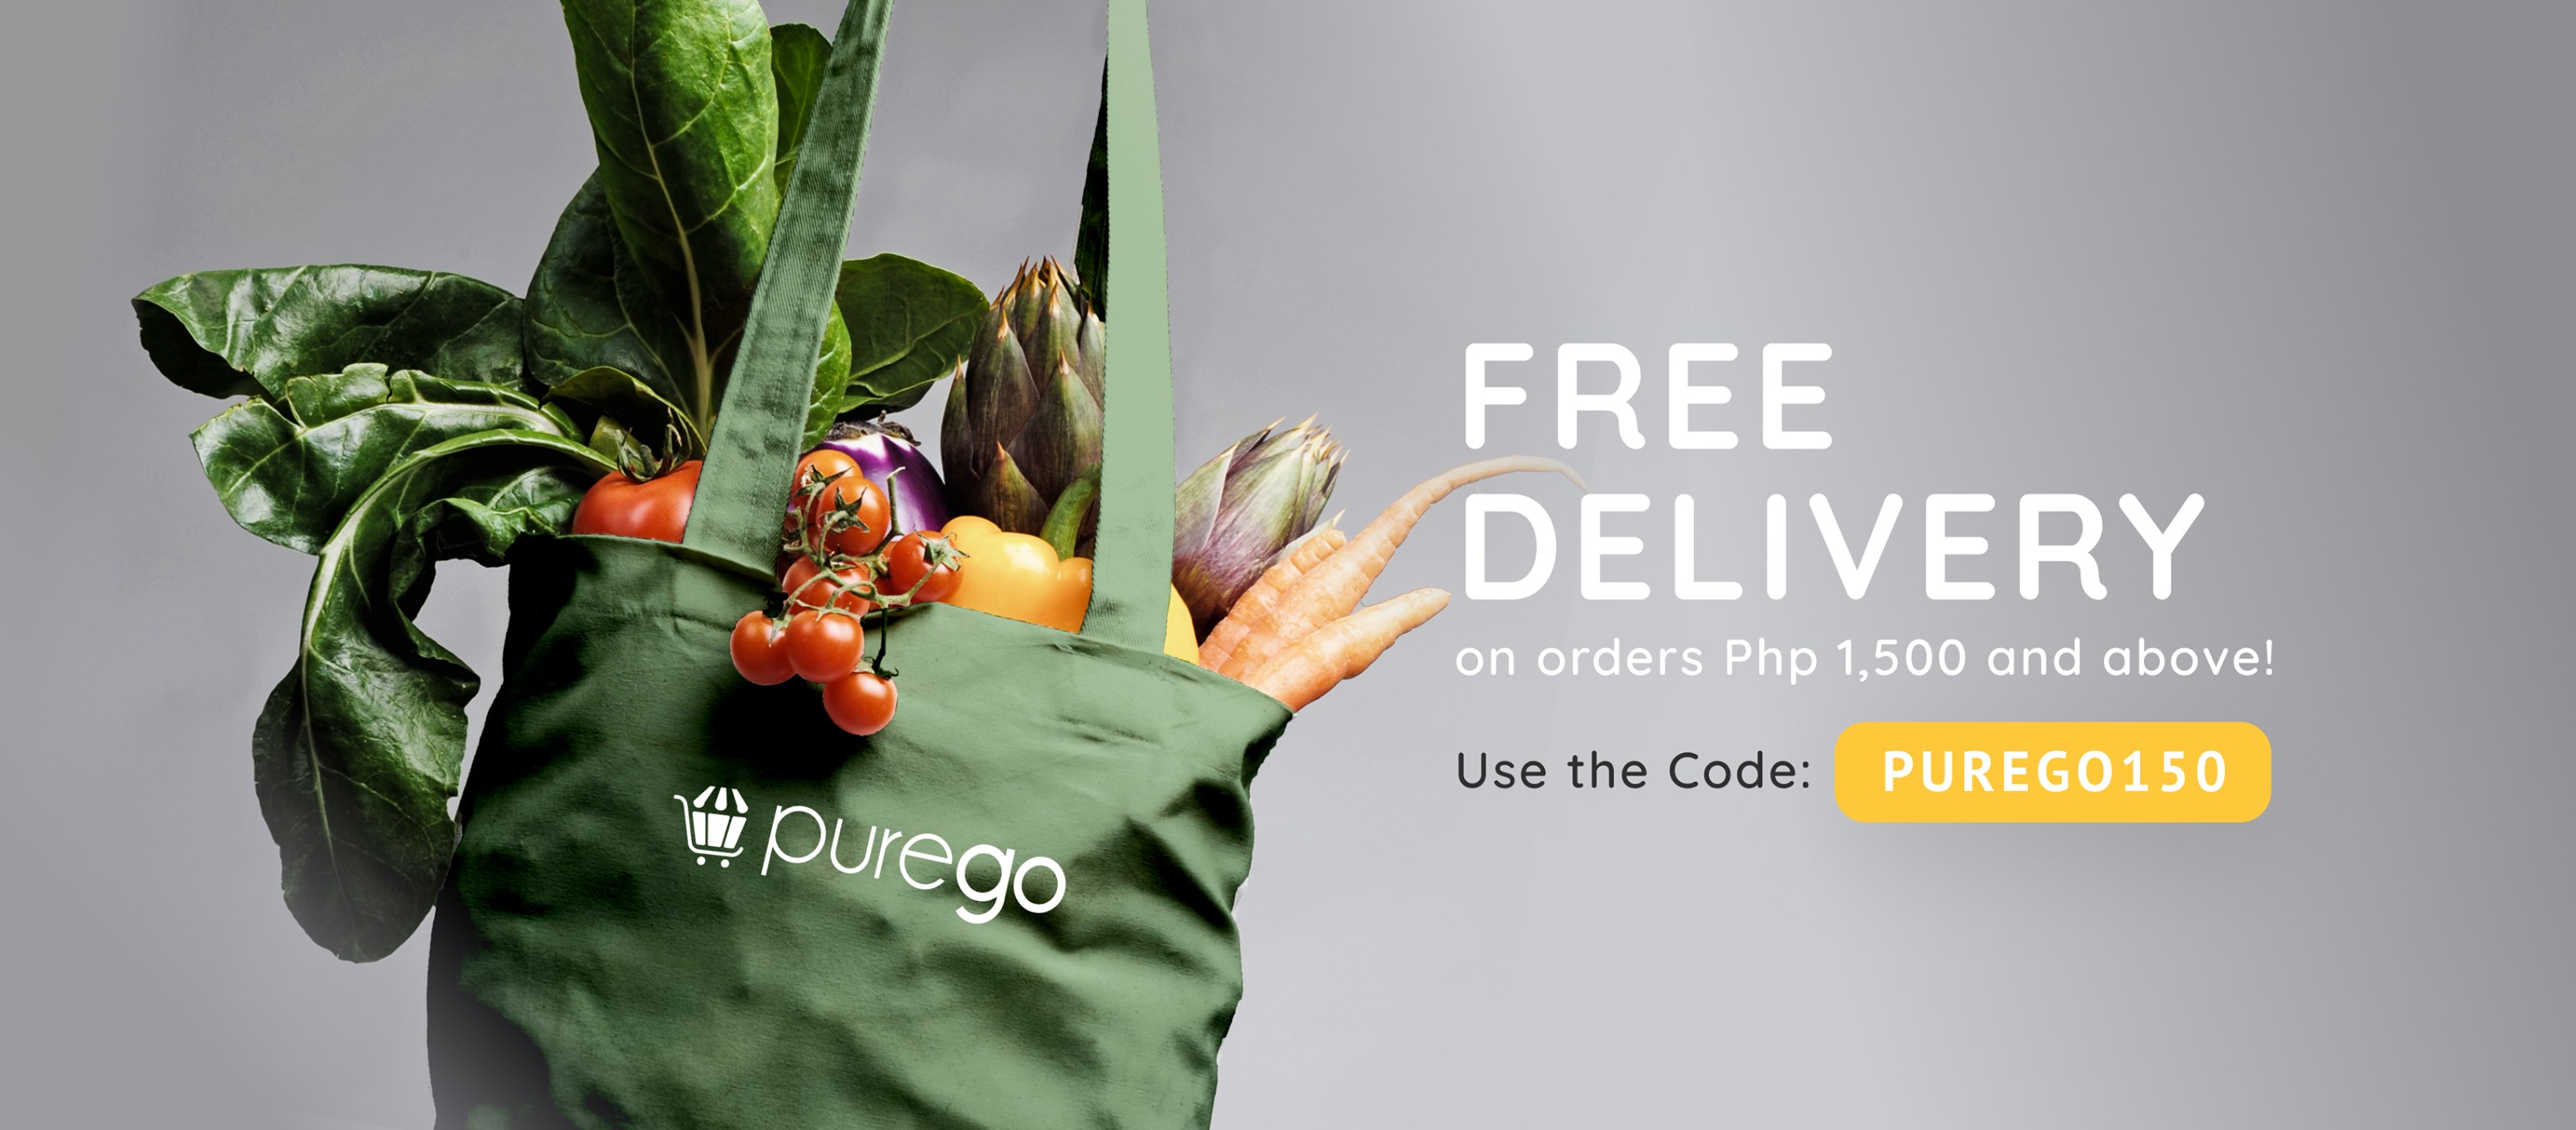 917Ventures, PureGold offer same day grocery delivery via PureGo